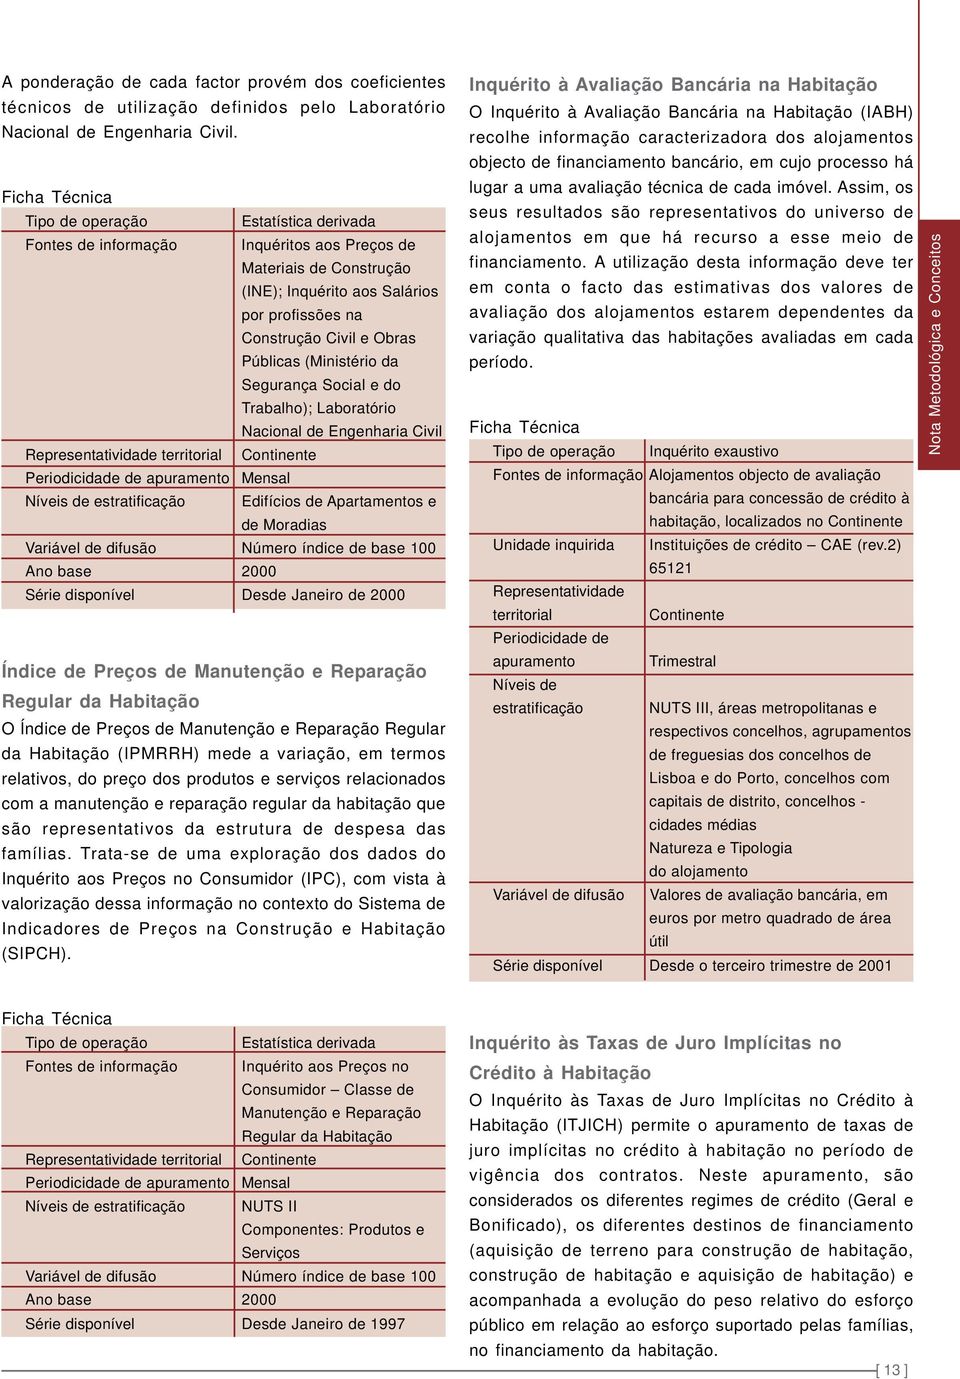 Públicas (Ministério da Segurança Social e do Trabalho); Laboratório Nacional de Engenharia Civil Representatividade territorial Continente Periodicidade de apuramento Mensal Níveis de estratificação